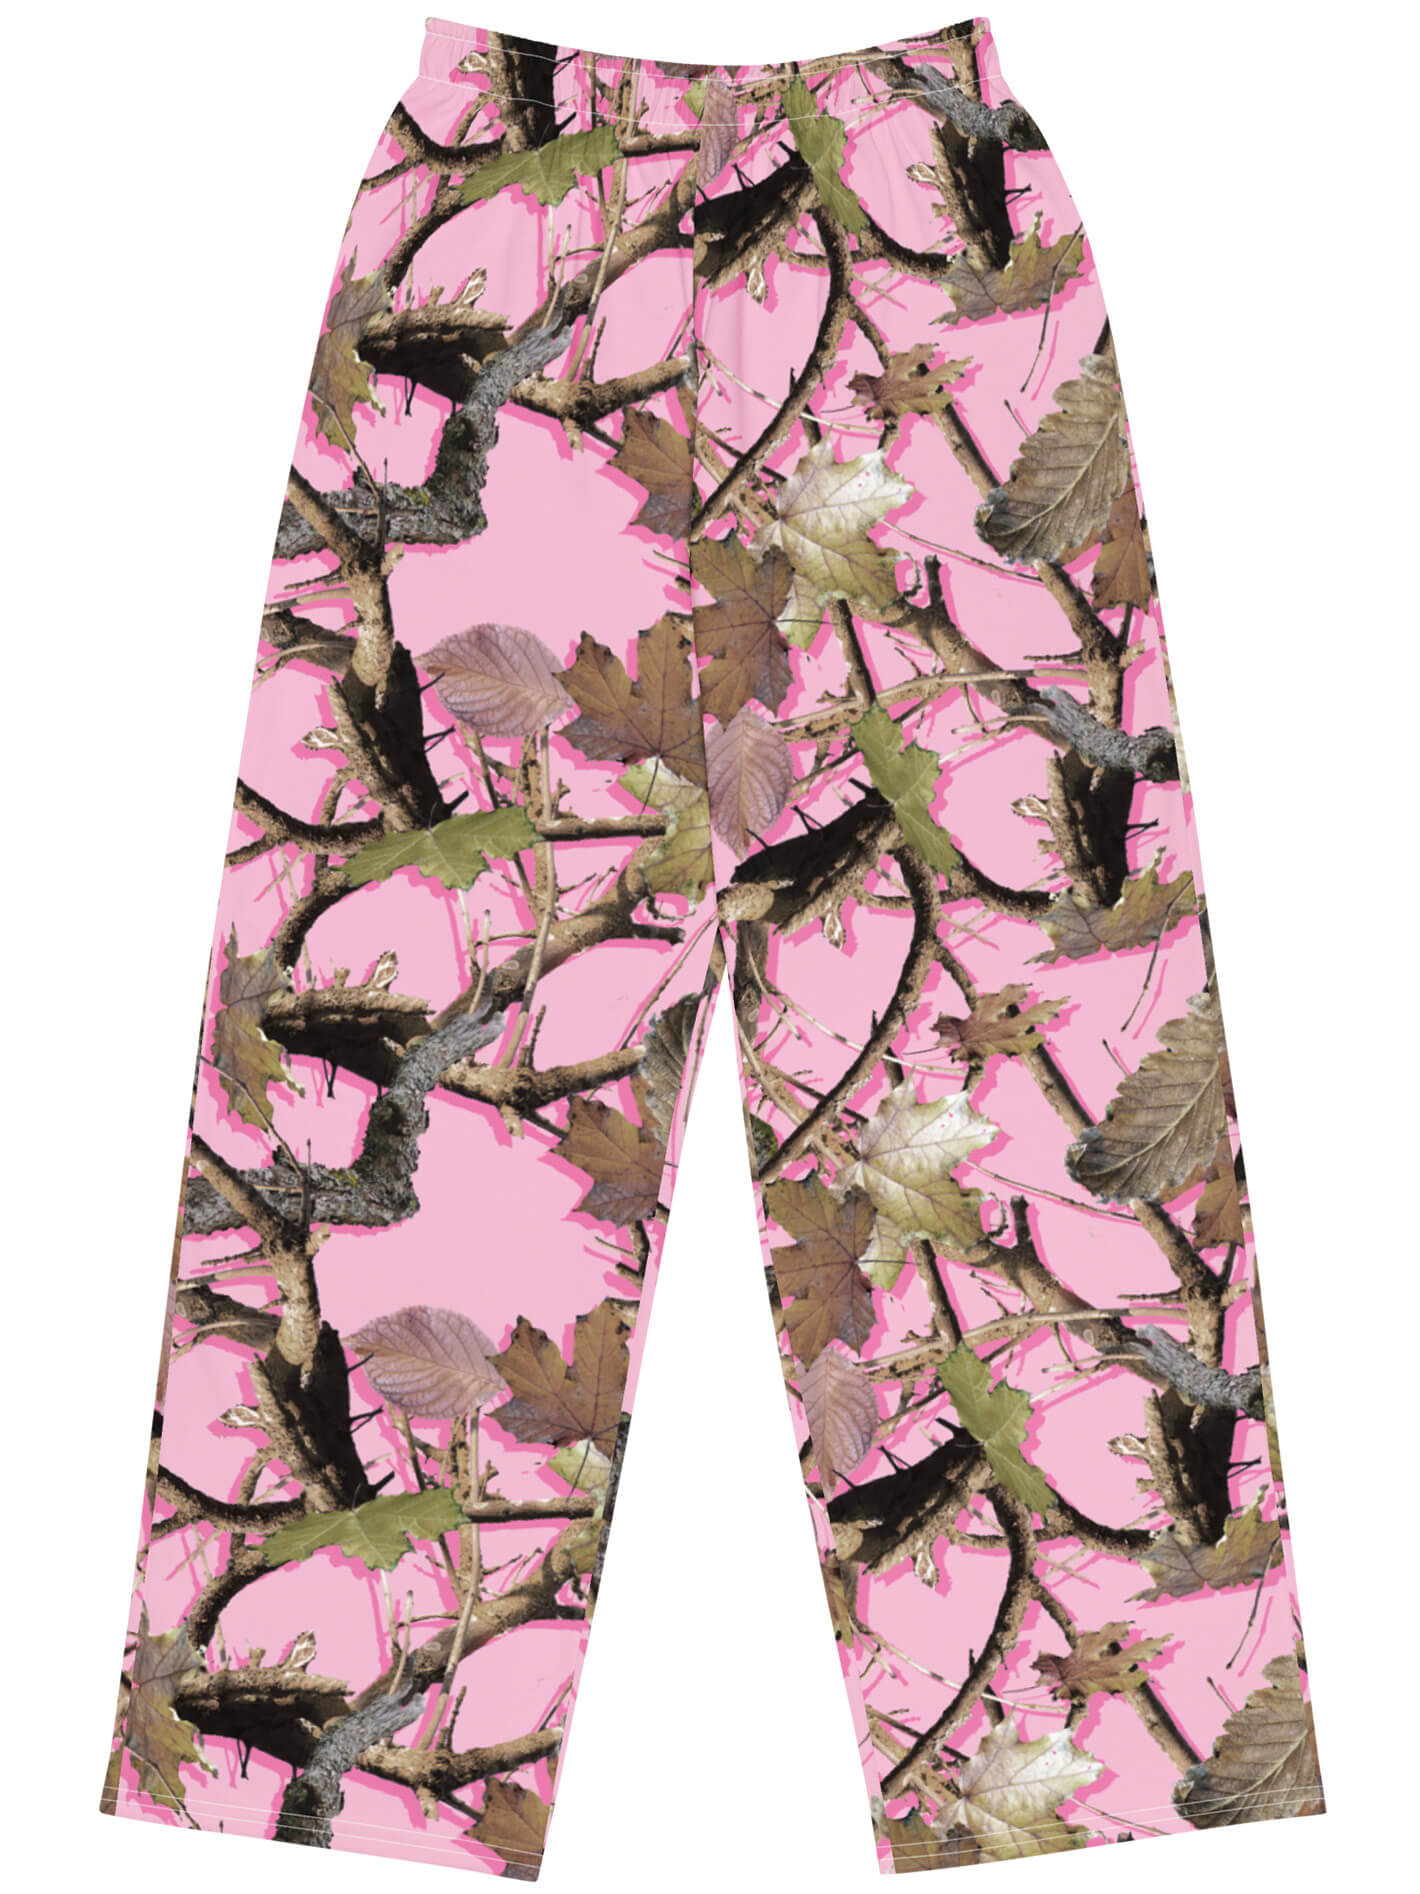 Pink hunter print plus size pants.